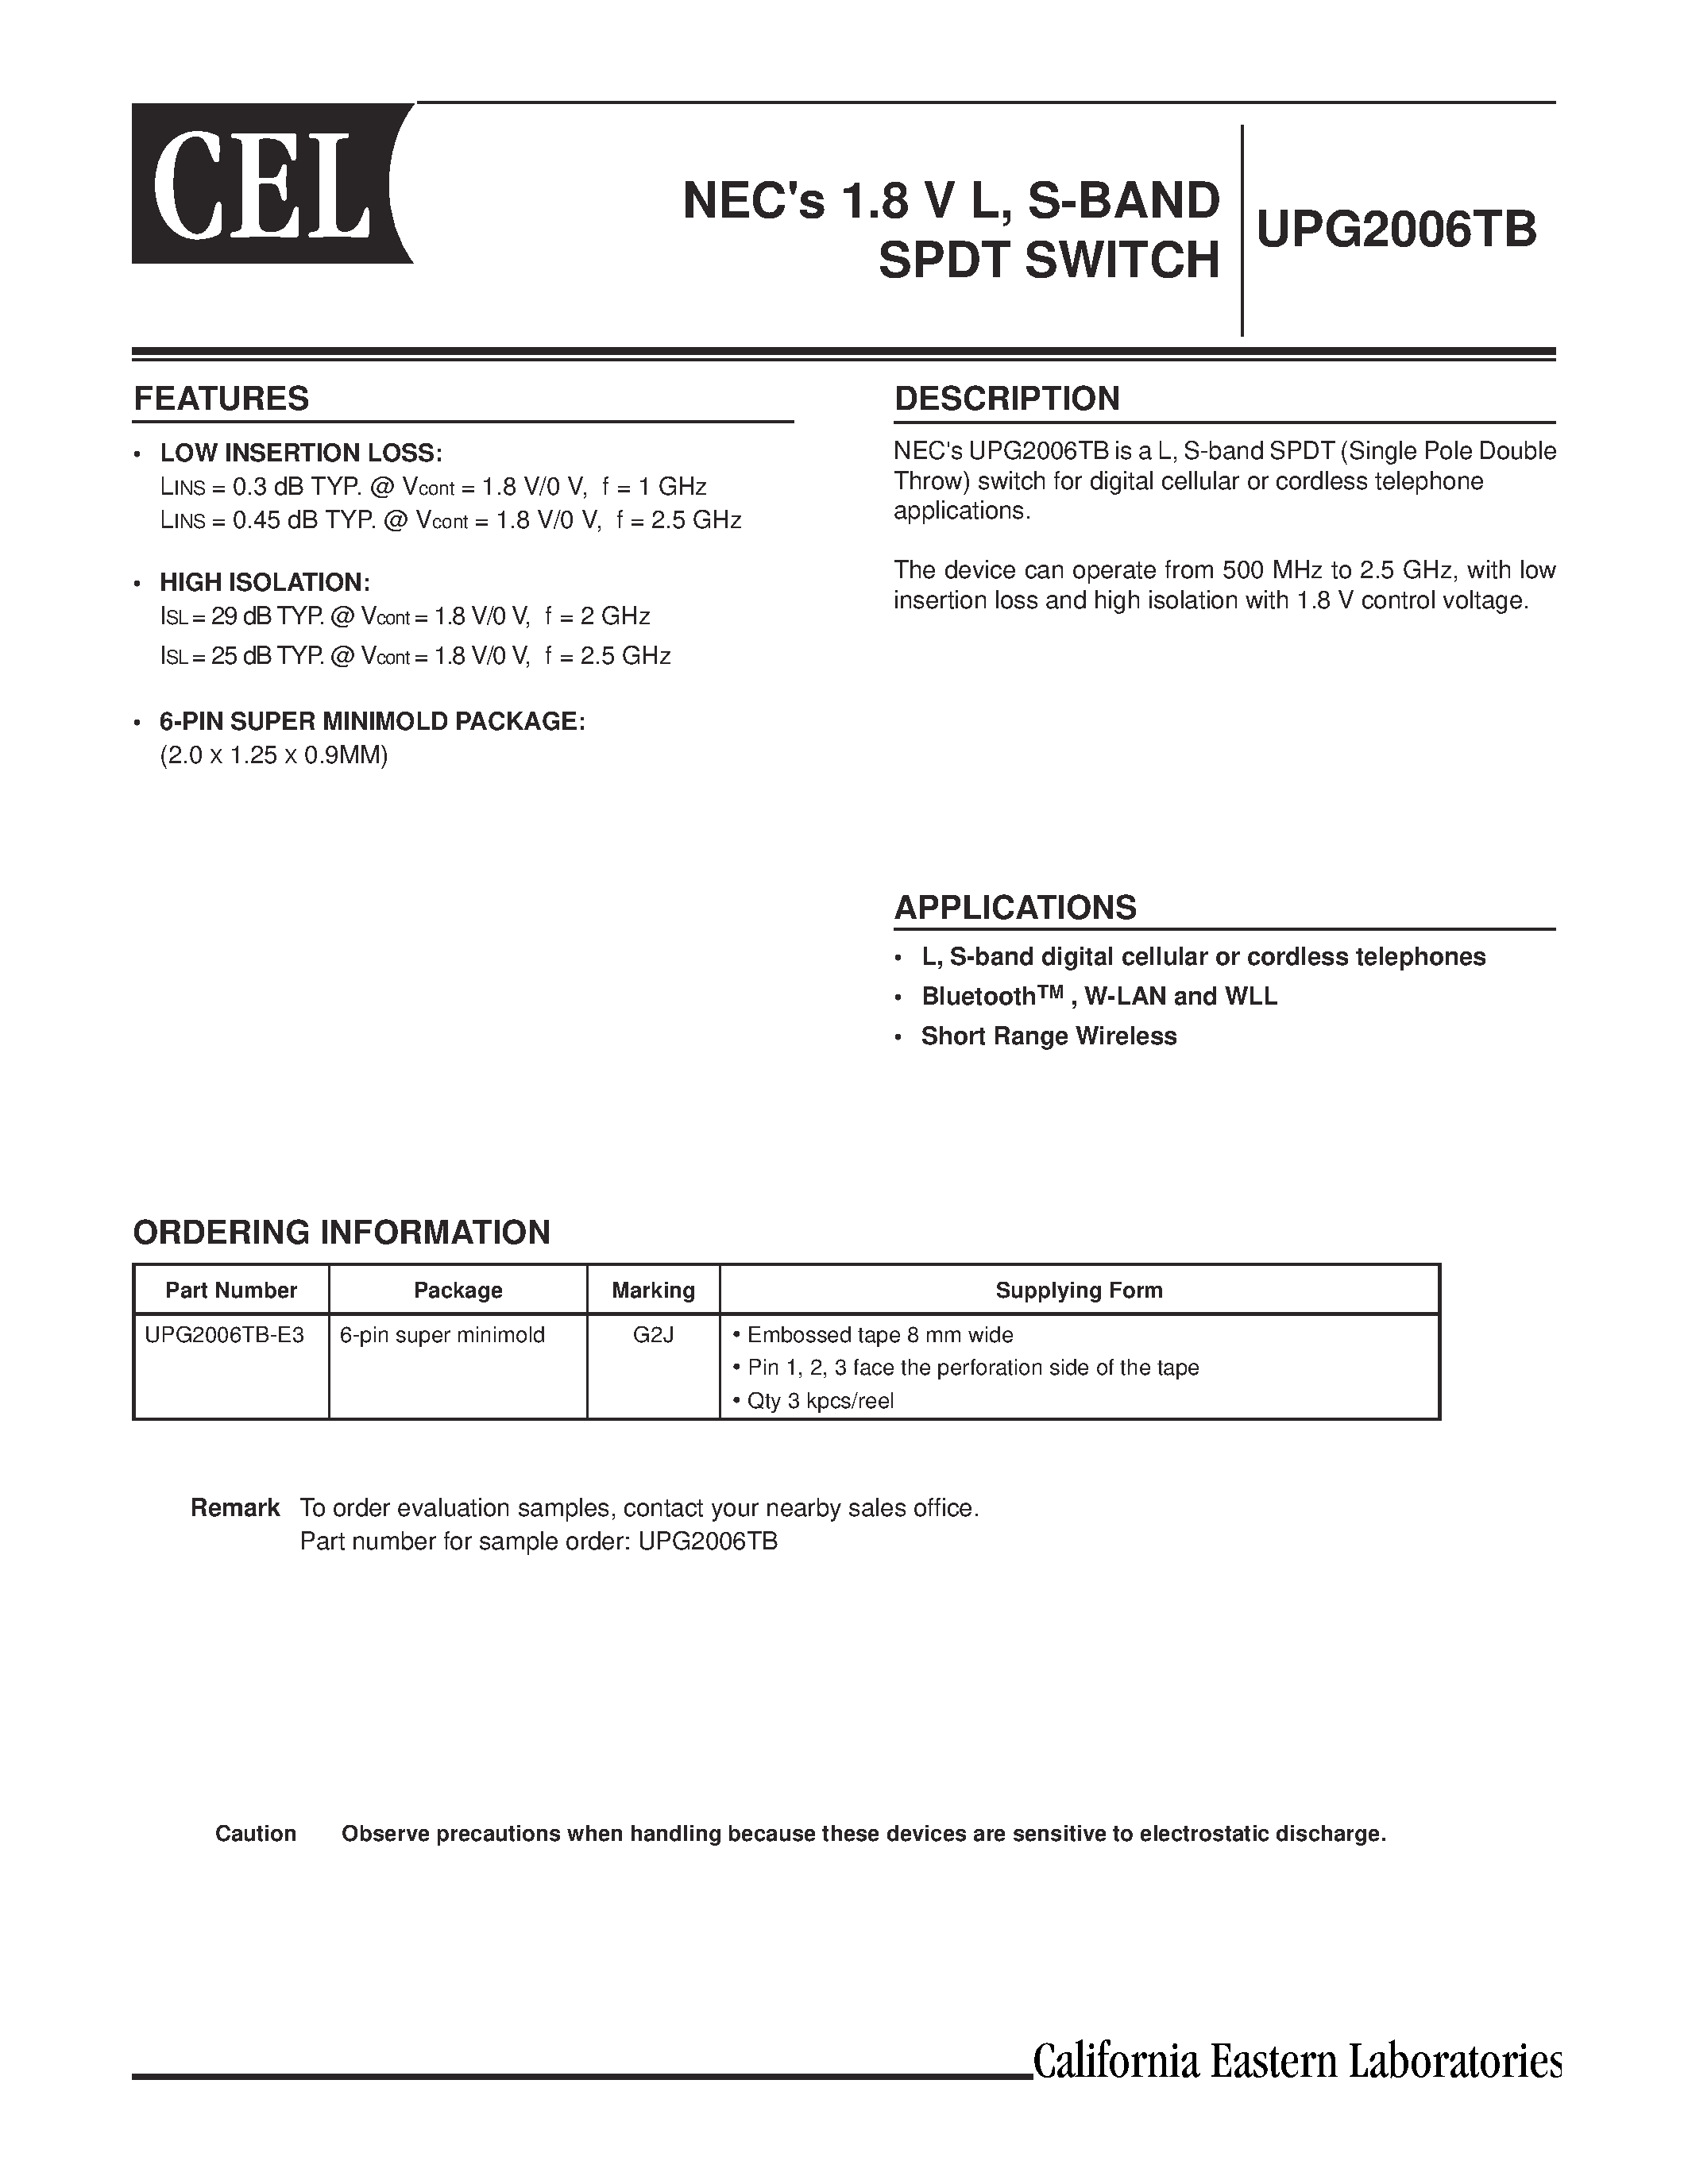 Datasheet UPG2006TB - NECs 1.8 V L/ S-BAND SPDT SWITCH page 1